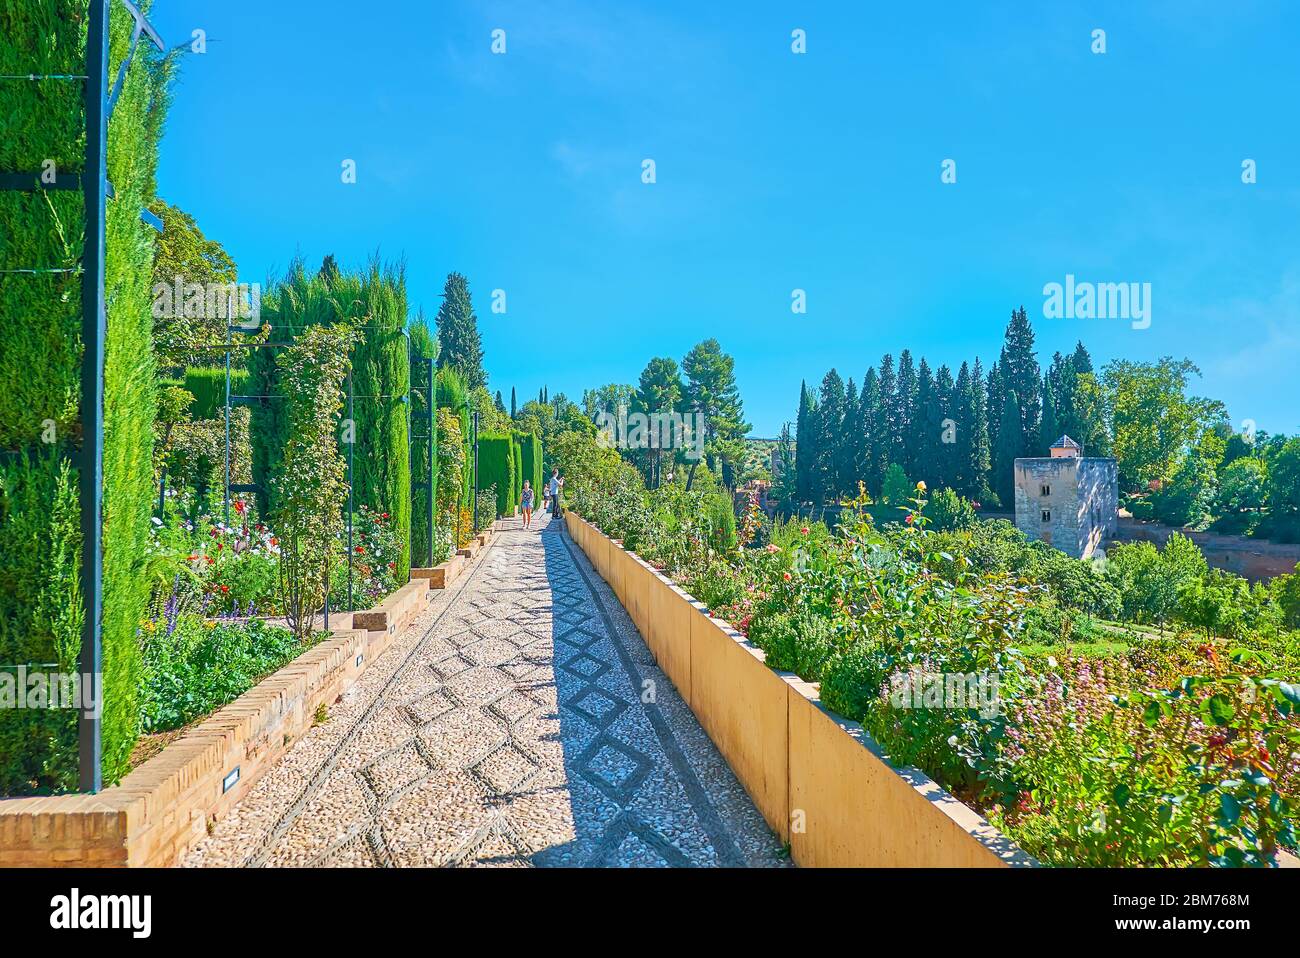 GRENADE, ESPAGNE - 25 SEPTEMBRE 2019 : le jardin Generalife est doté de thujas topiaires, de massifs de fleurs de roses, de salvia et d'autres fleurs, de grands cyprès et de m Banque D'Images